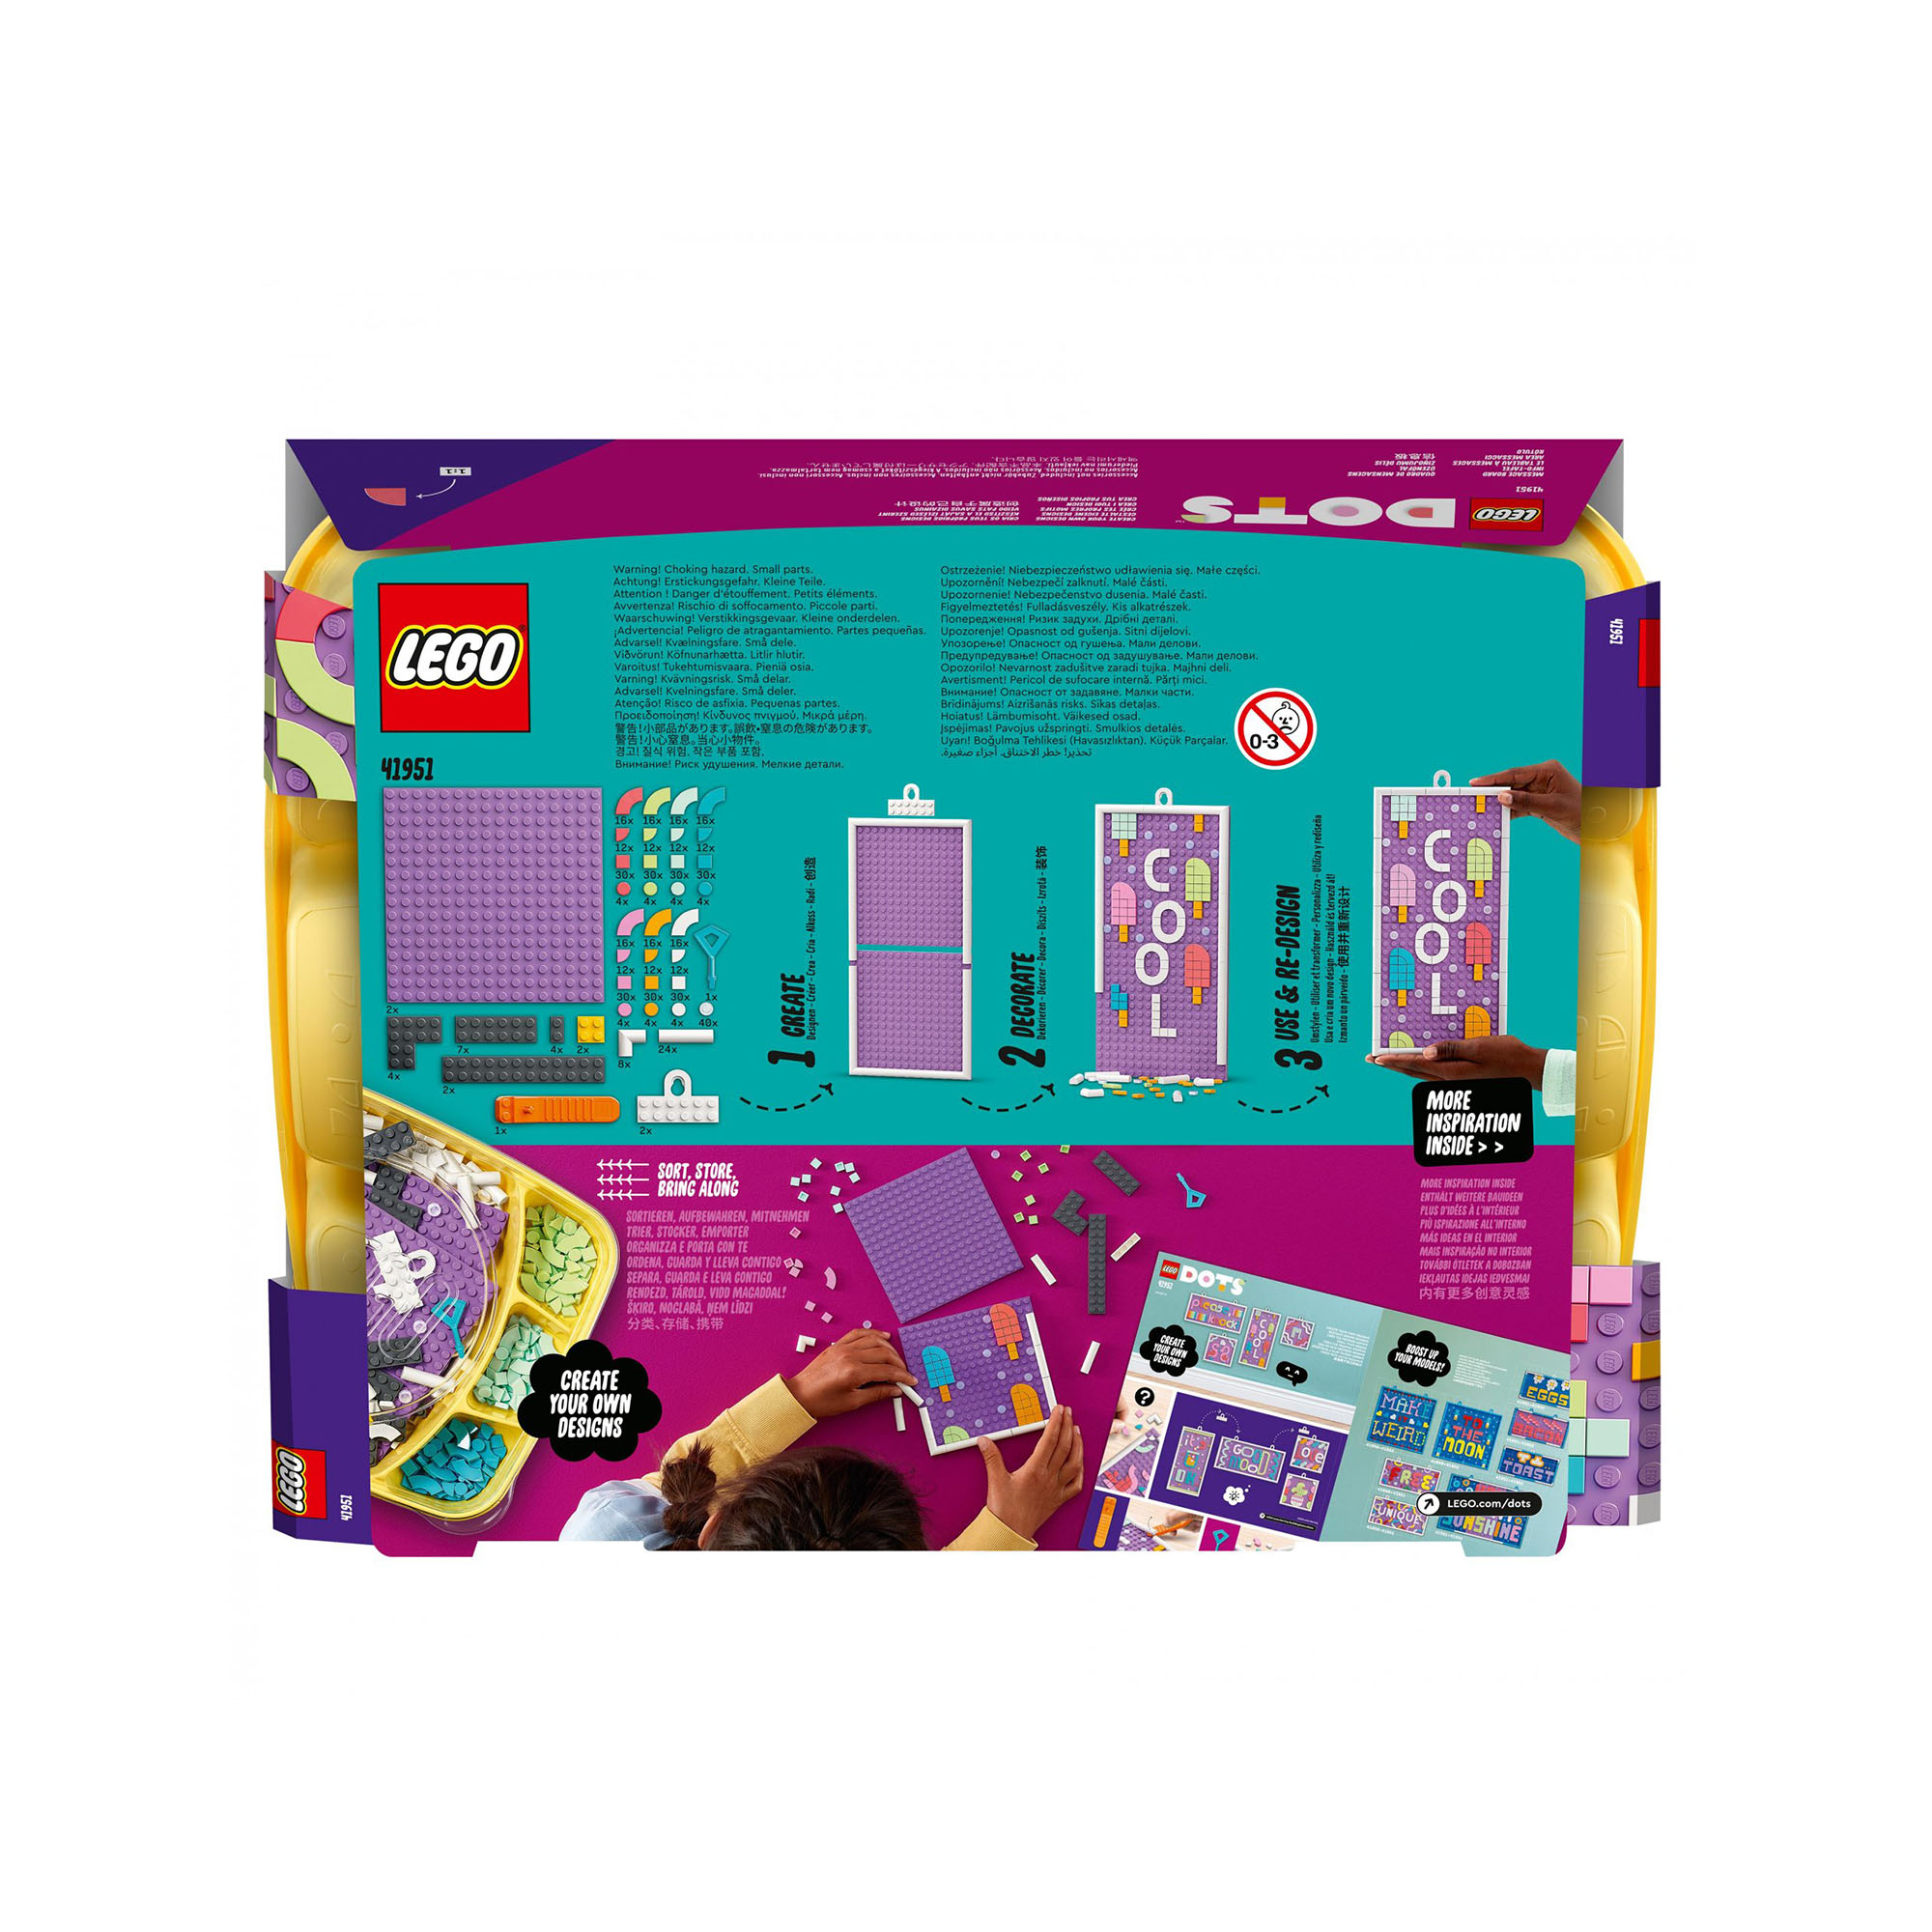 LEGO DOTS Bacheca Messaggi, Lavagna Personalizzabile per Bambini, Accessori per  41951, , large